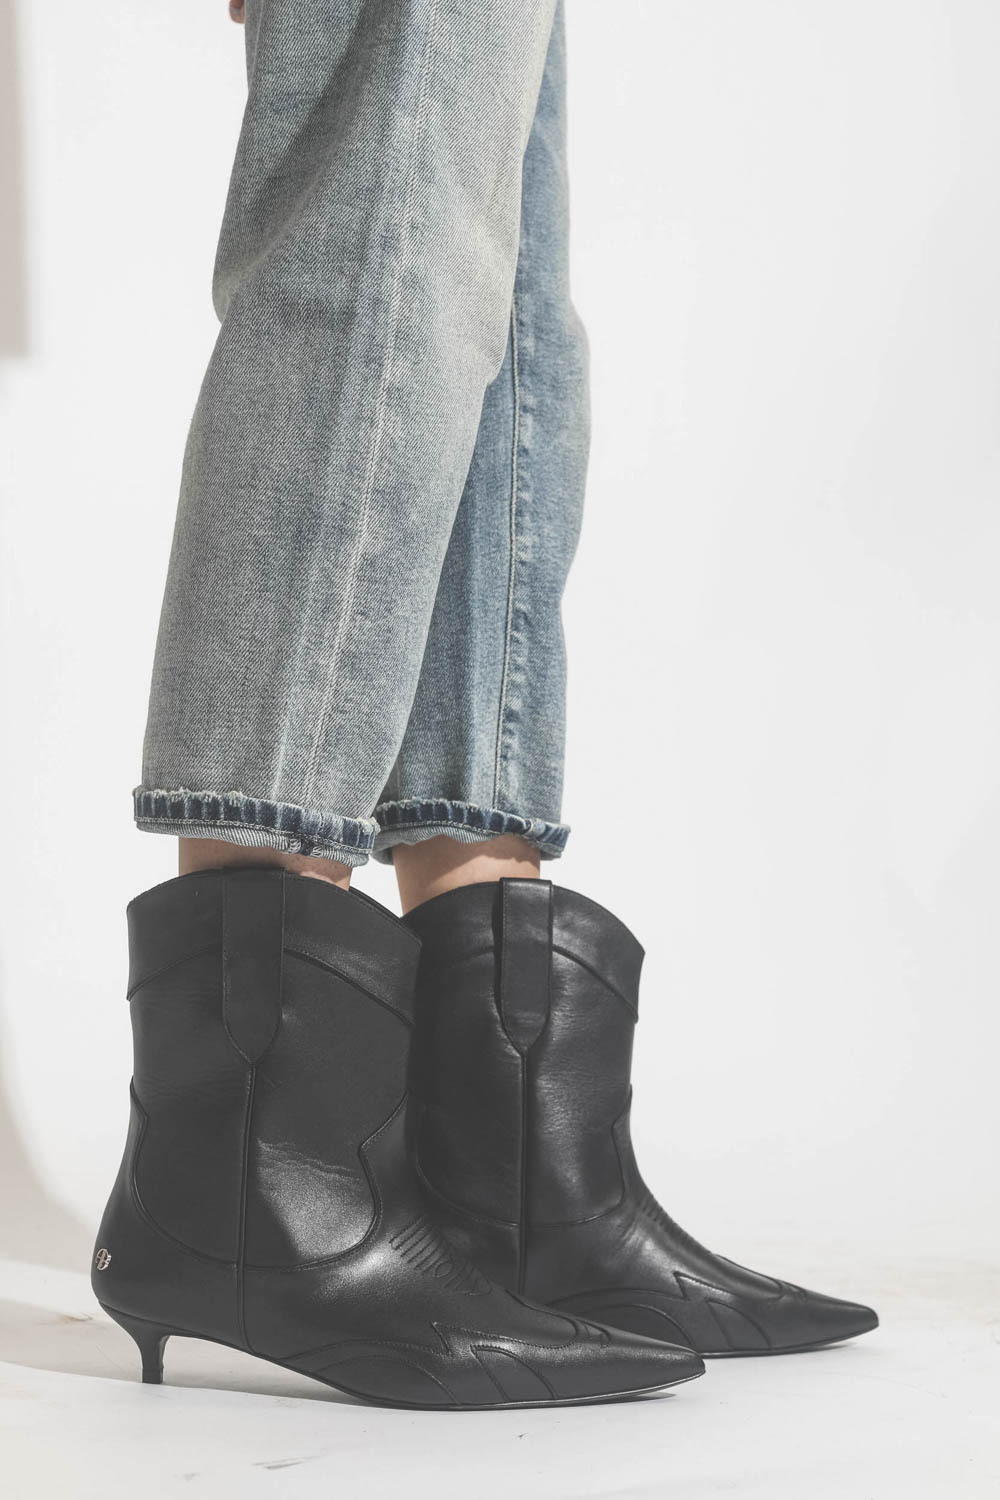 Boots en cuir noir esprit santiag petits talons bobines Rae Anine Bing. Porté avec un jeans bleu ciel.